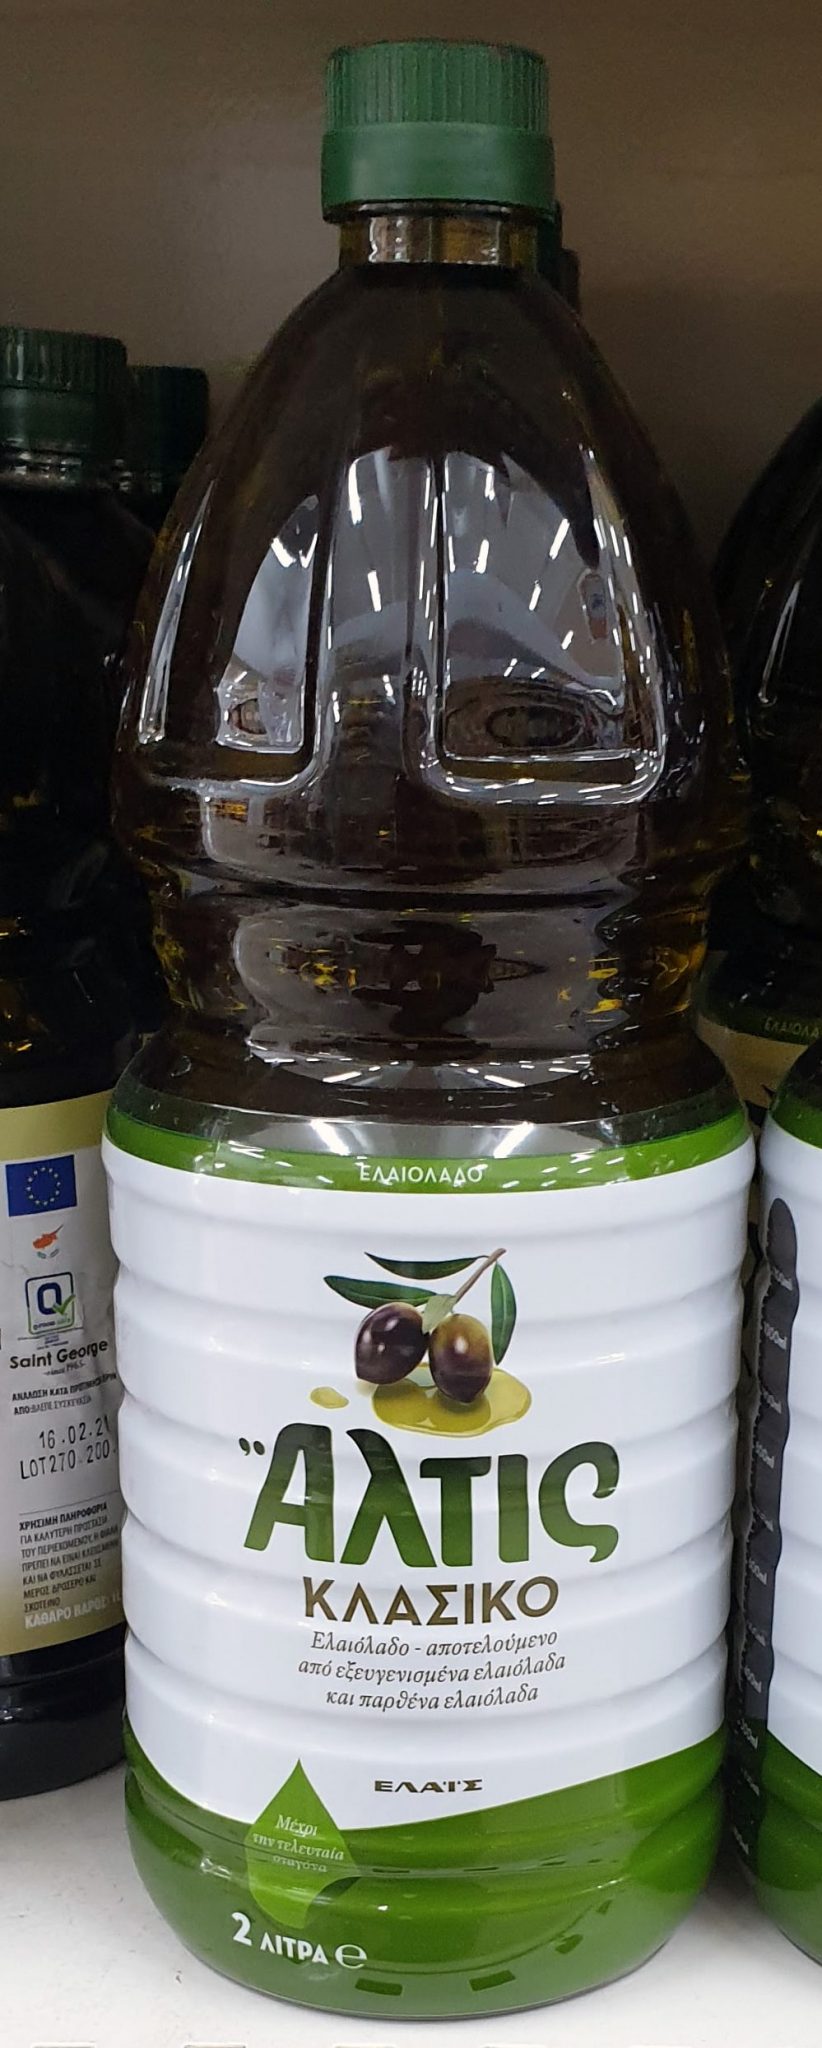 Altis olive oil buy online